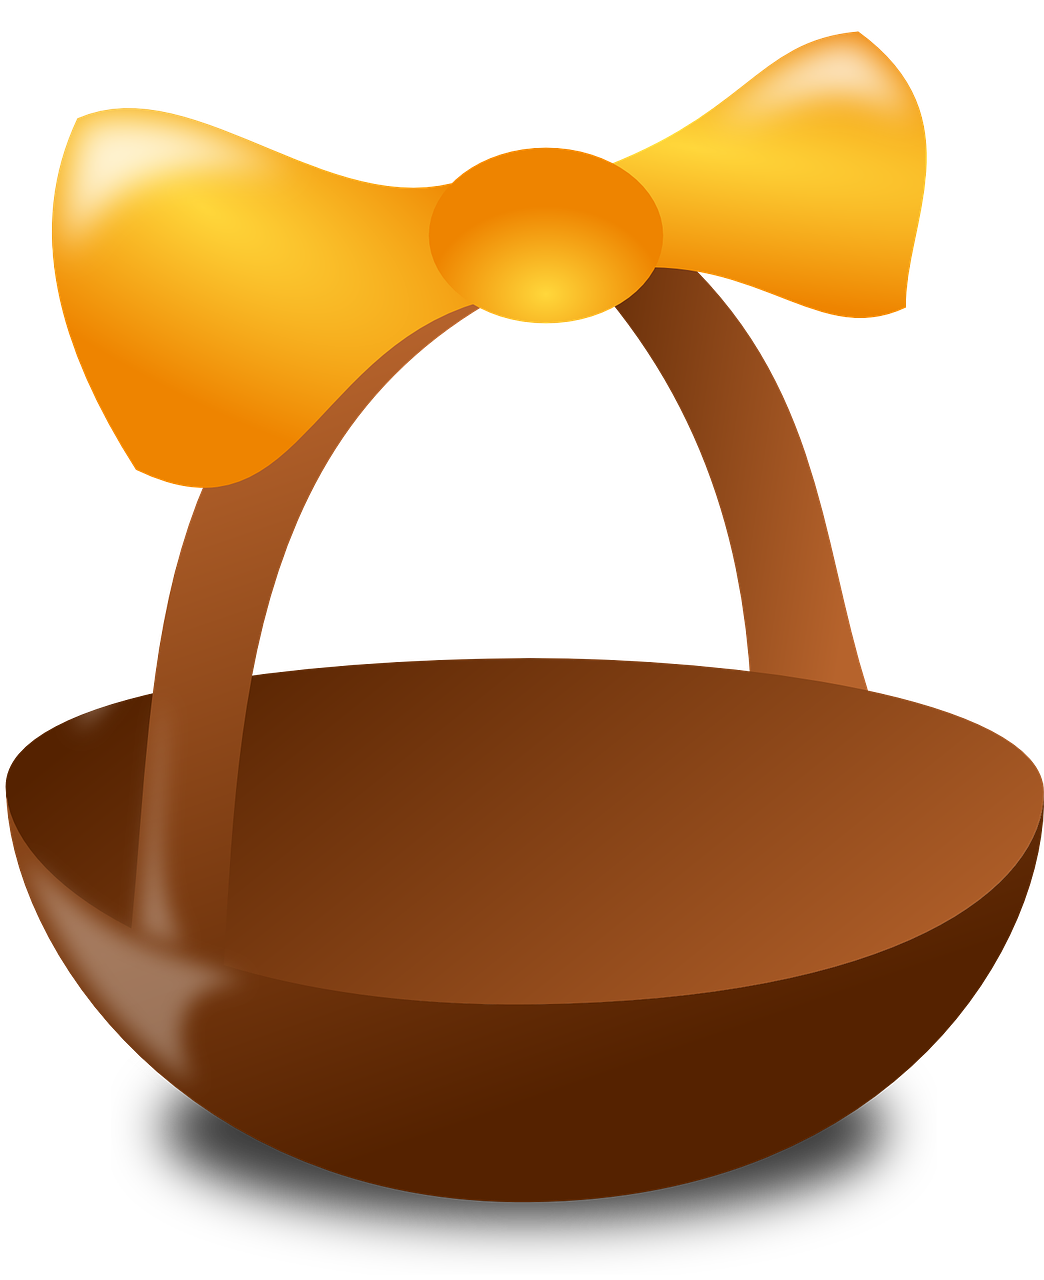 Gift Ideas For 30th Birthday - Easter Egg Basket Clip Art (1044x1280)